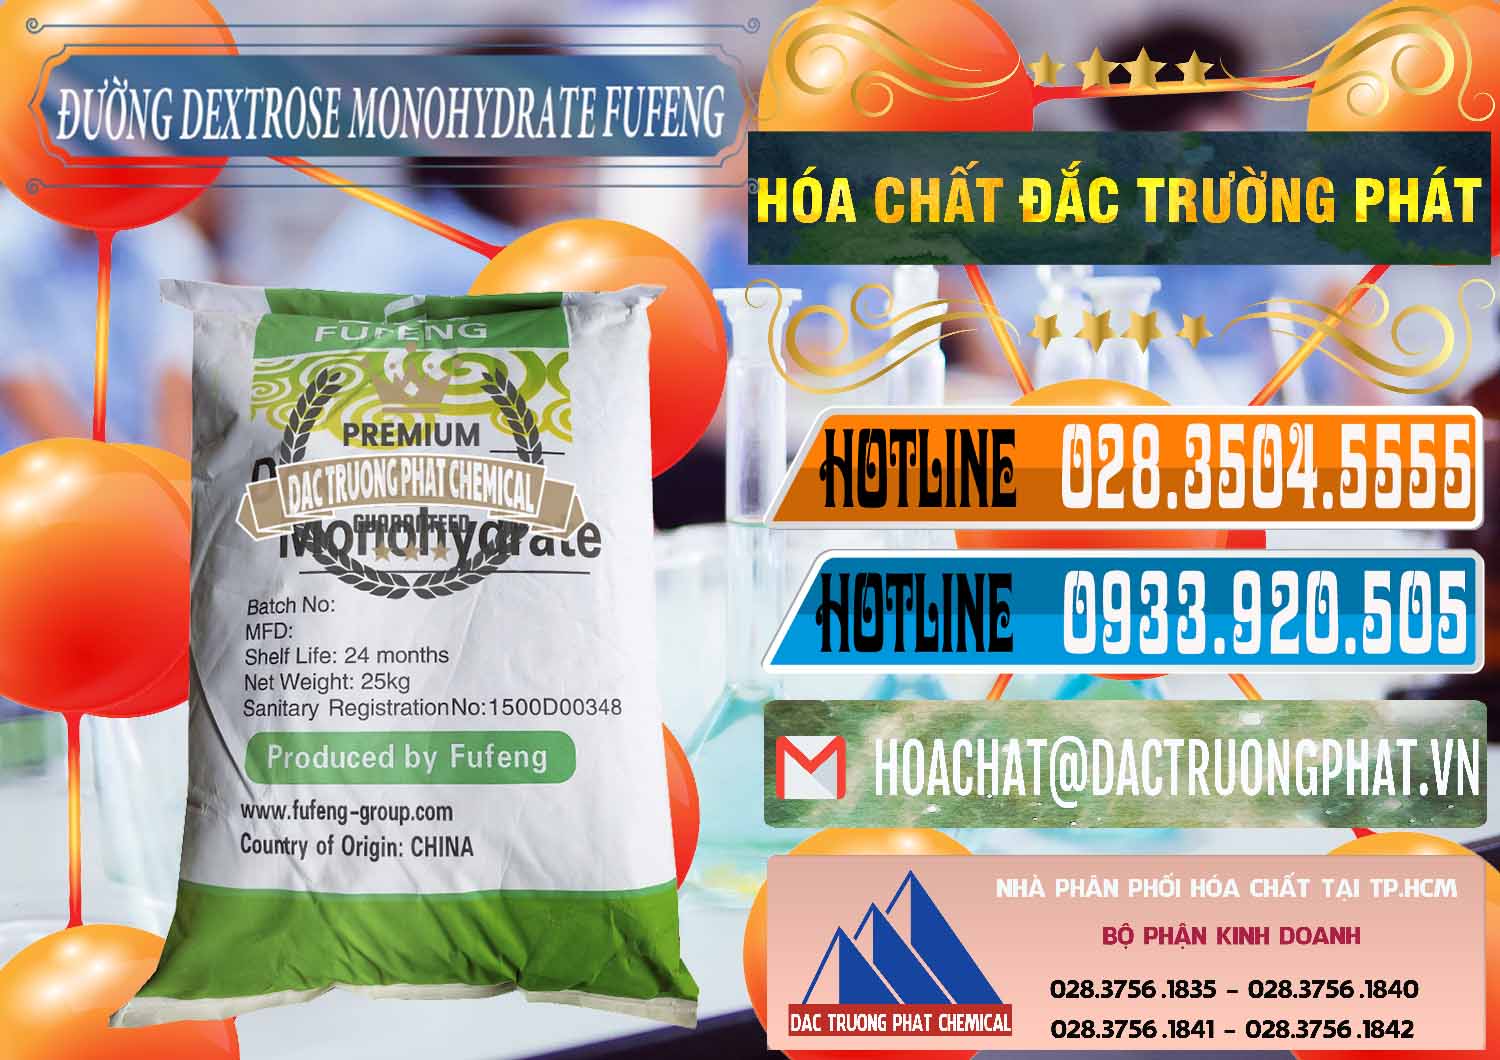 Cty cung cấp _ bán Đường Dextrose Monohydrate Food Grade Fufeng Trung Quốc China - 0223 - Chuyên nhập khẩu và cung cấp hóa chất tại TP.HCM - stmp.net